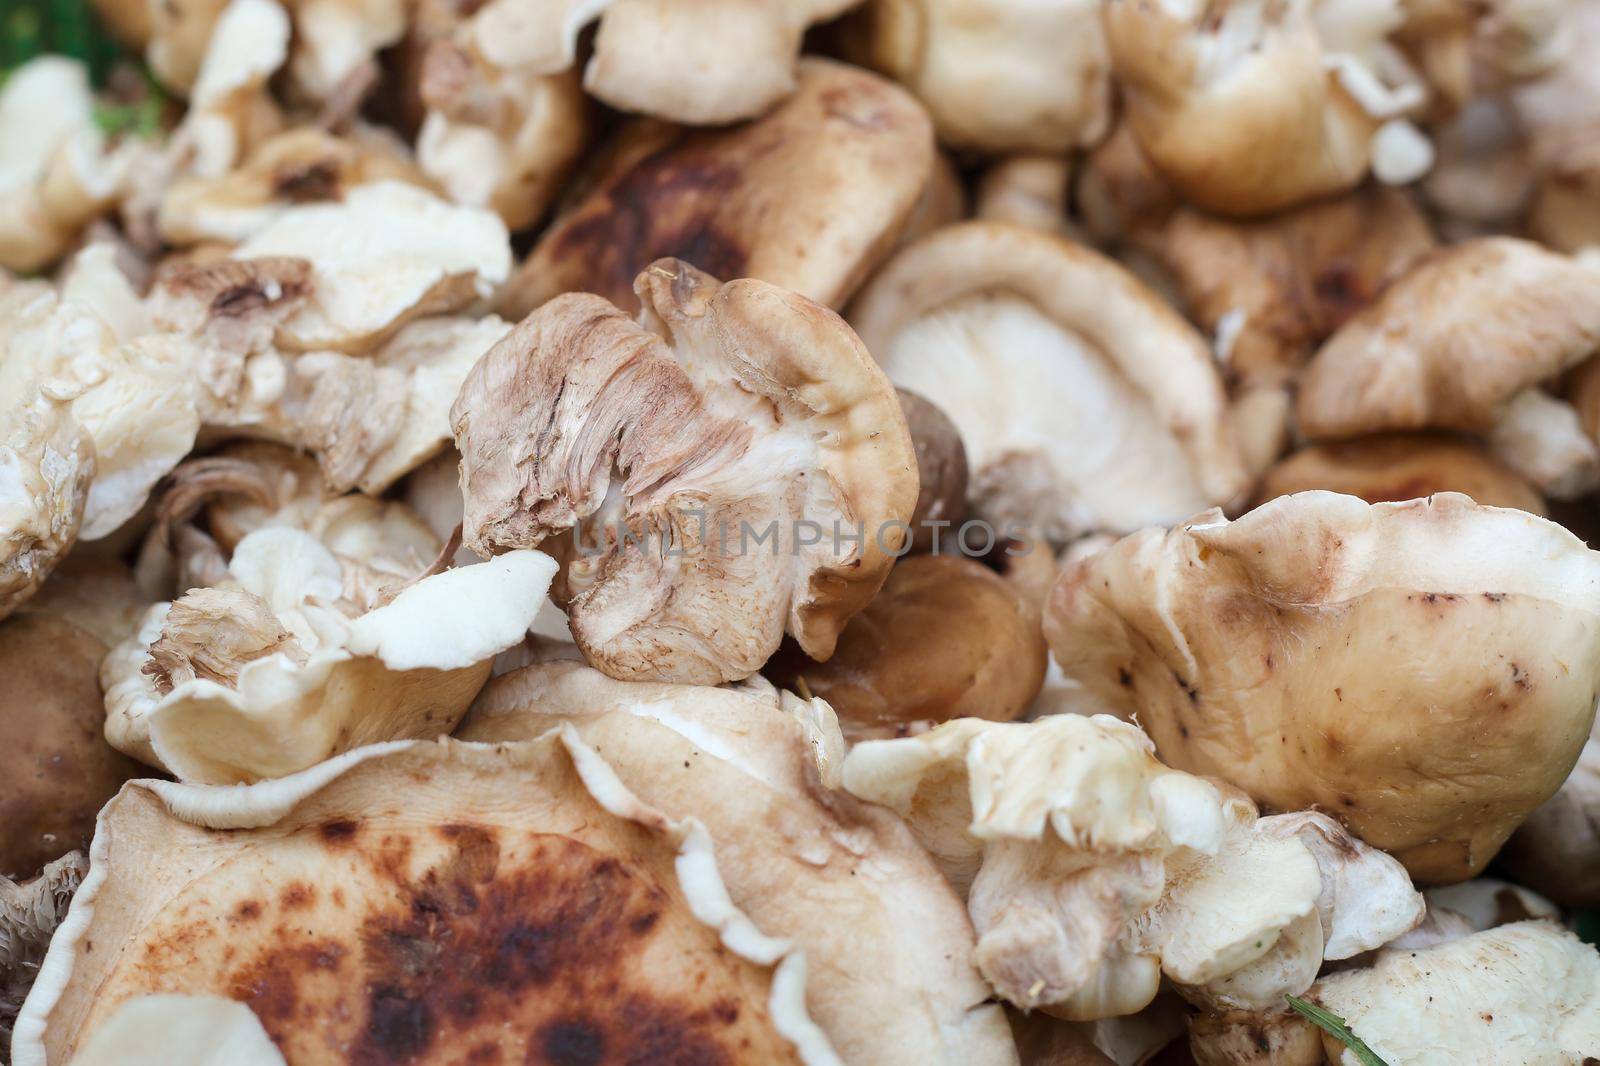 choice of shiitake mushrooms at the market